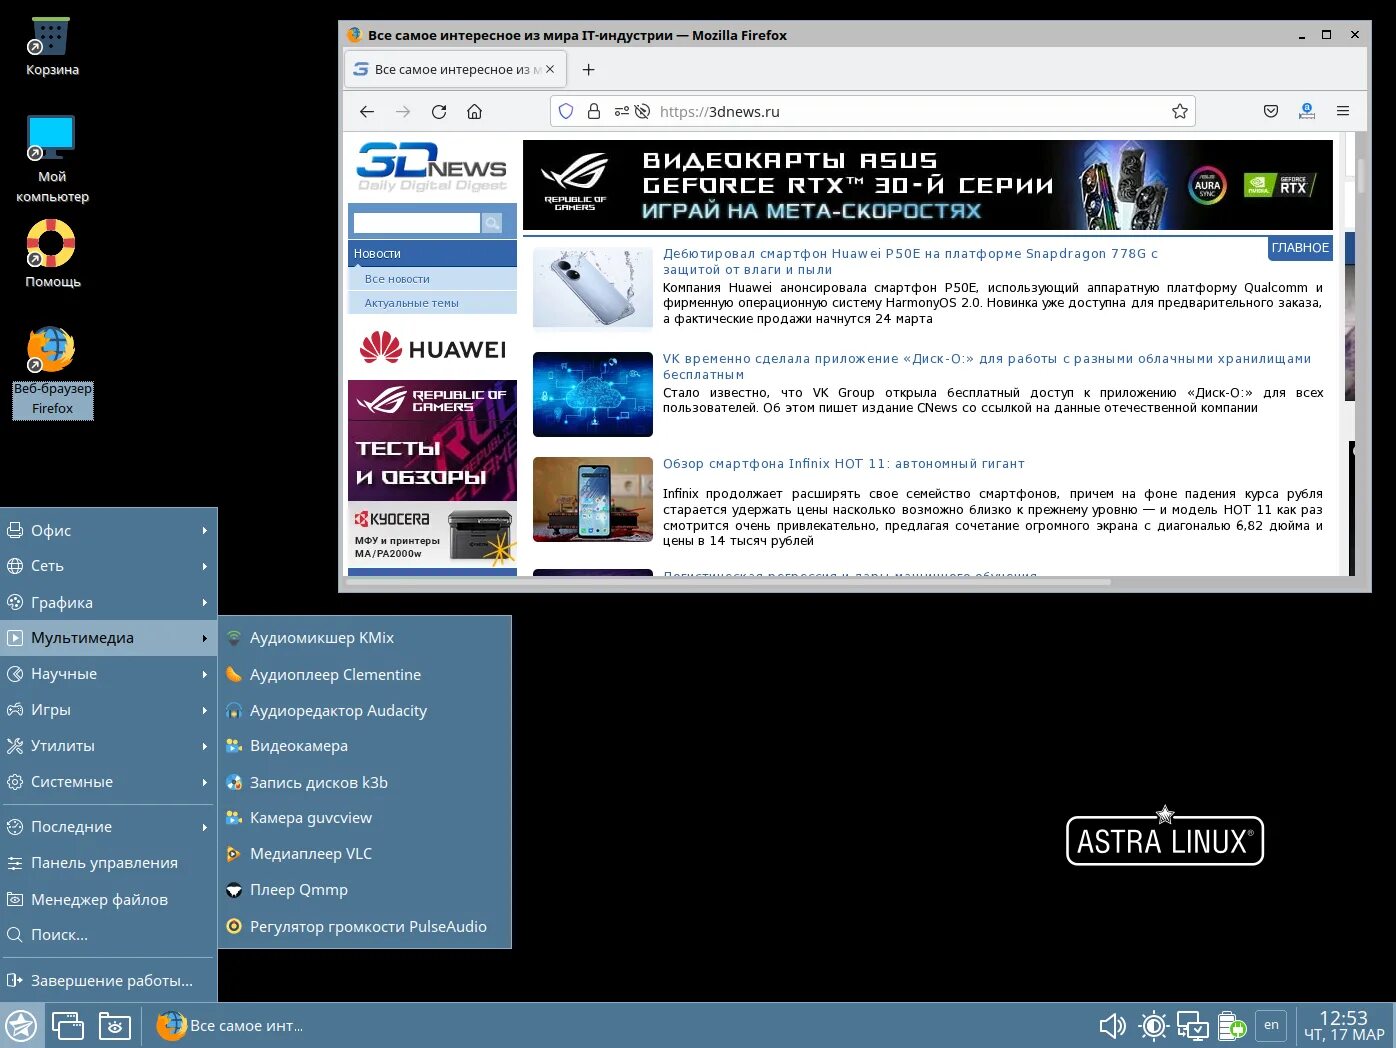 Бесплатный аналог windows 10. Российские программы для компьютера вместо виндовс. Astra Linux импортозамещение. Российский линукс. Русский Операционная система.